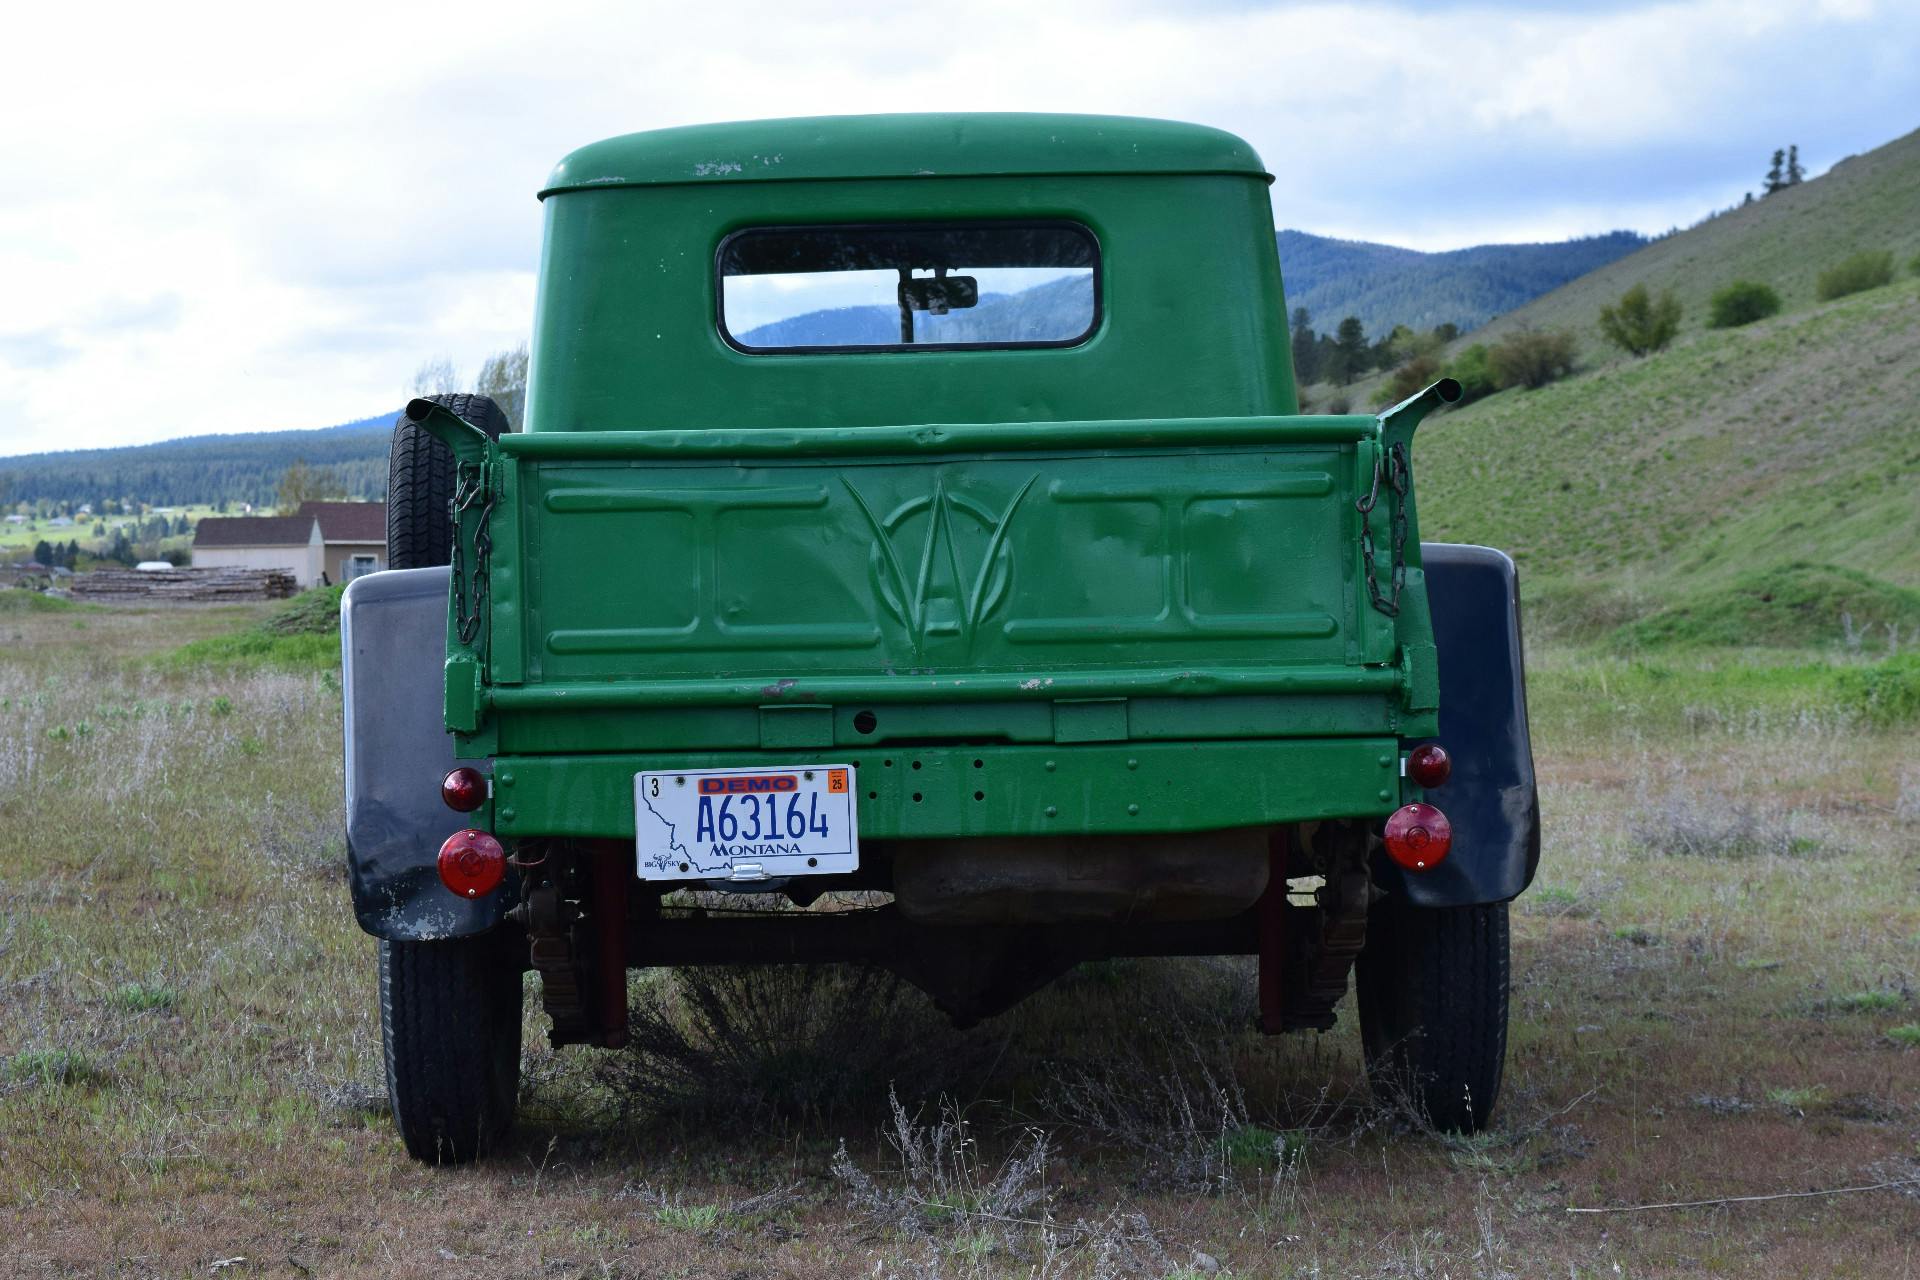 Vehicle image 1